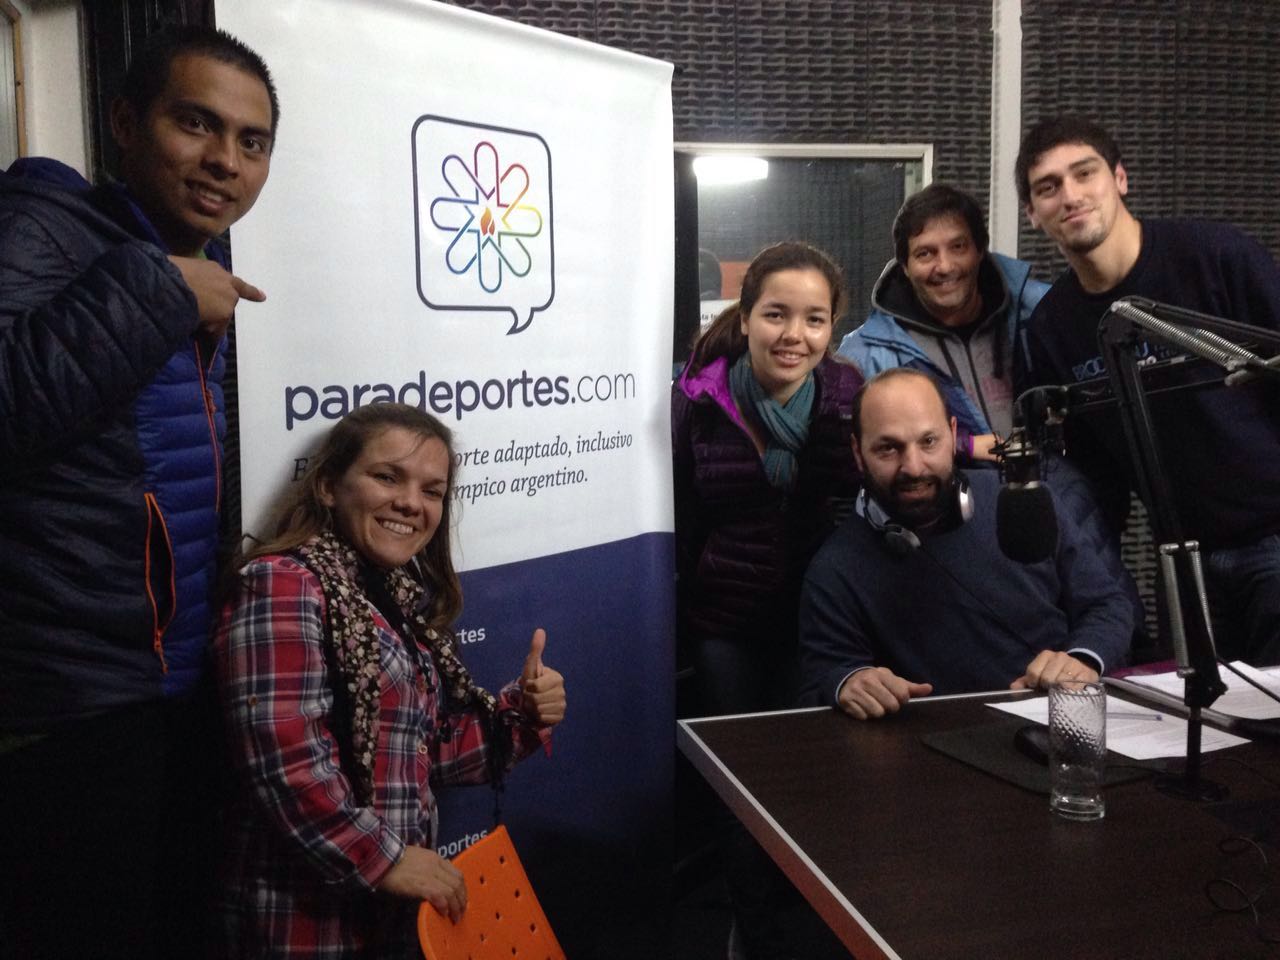 Nota: Atletismo paralímpico: La Selección Argentina visitó Paradeportes radio